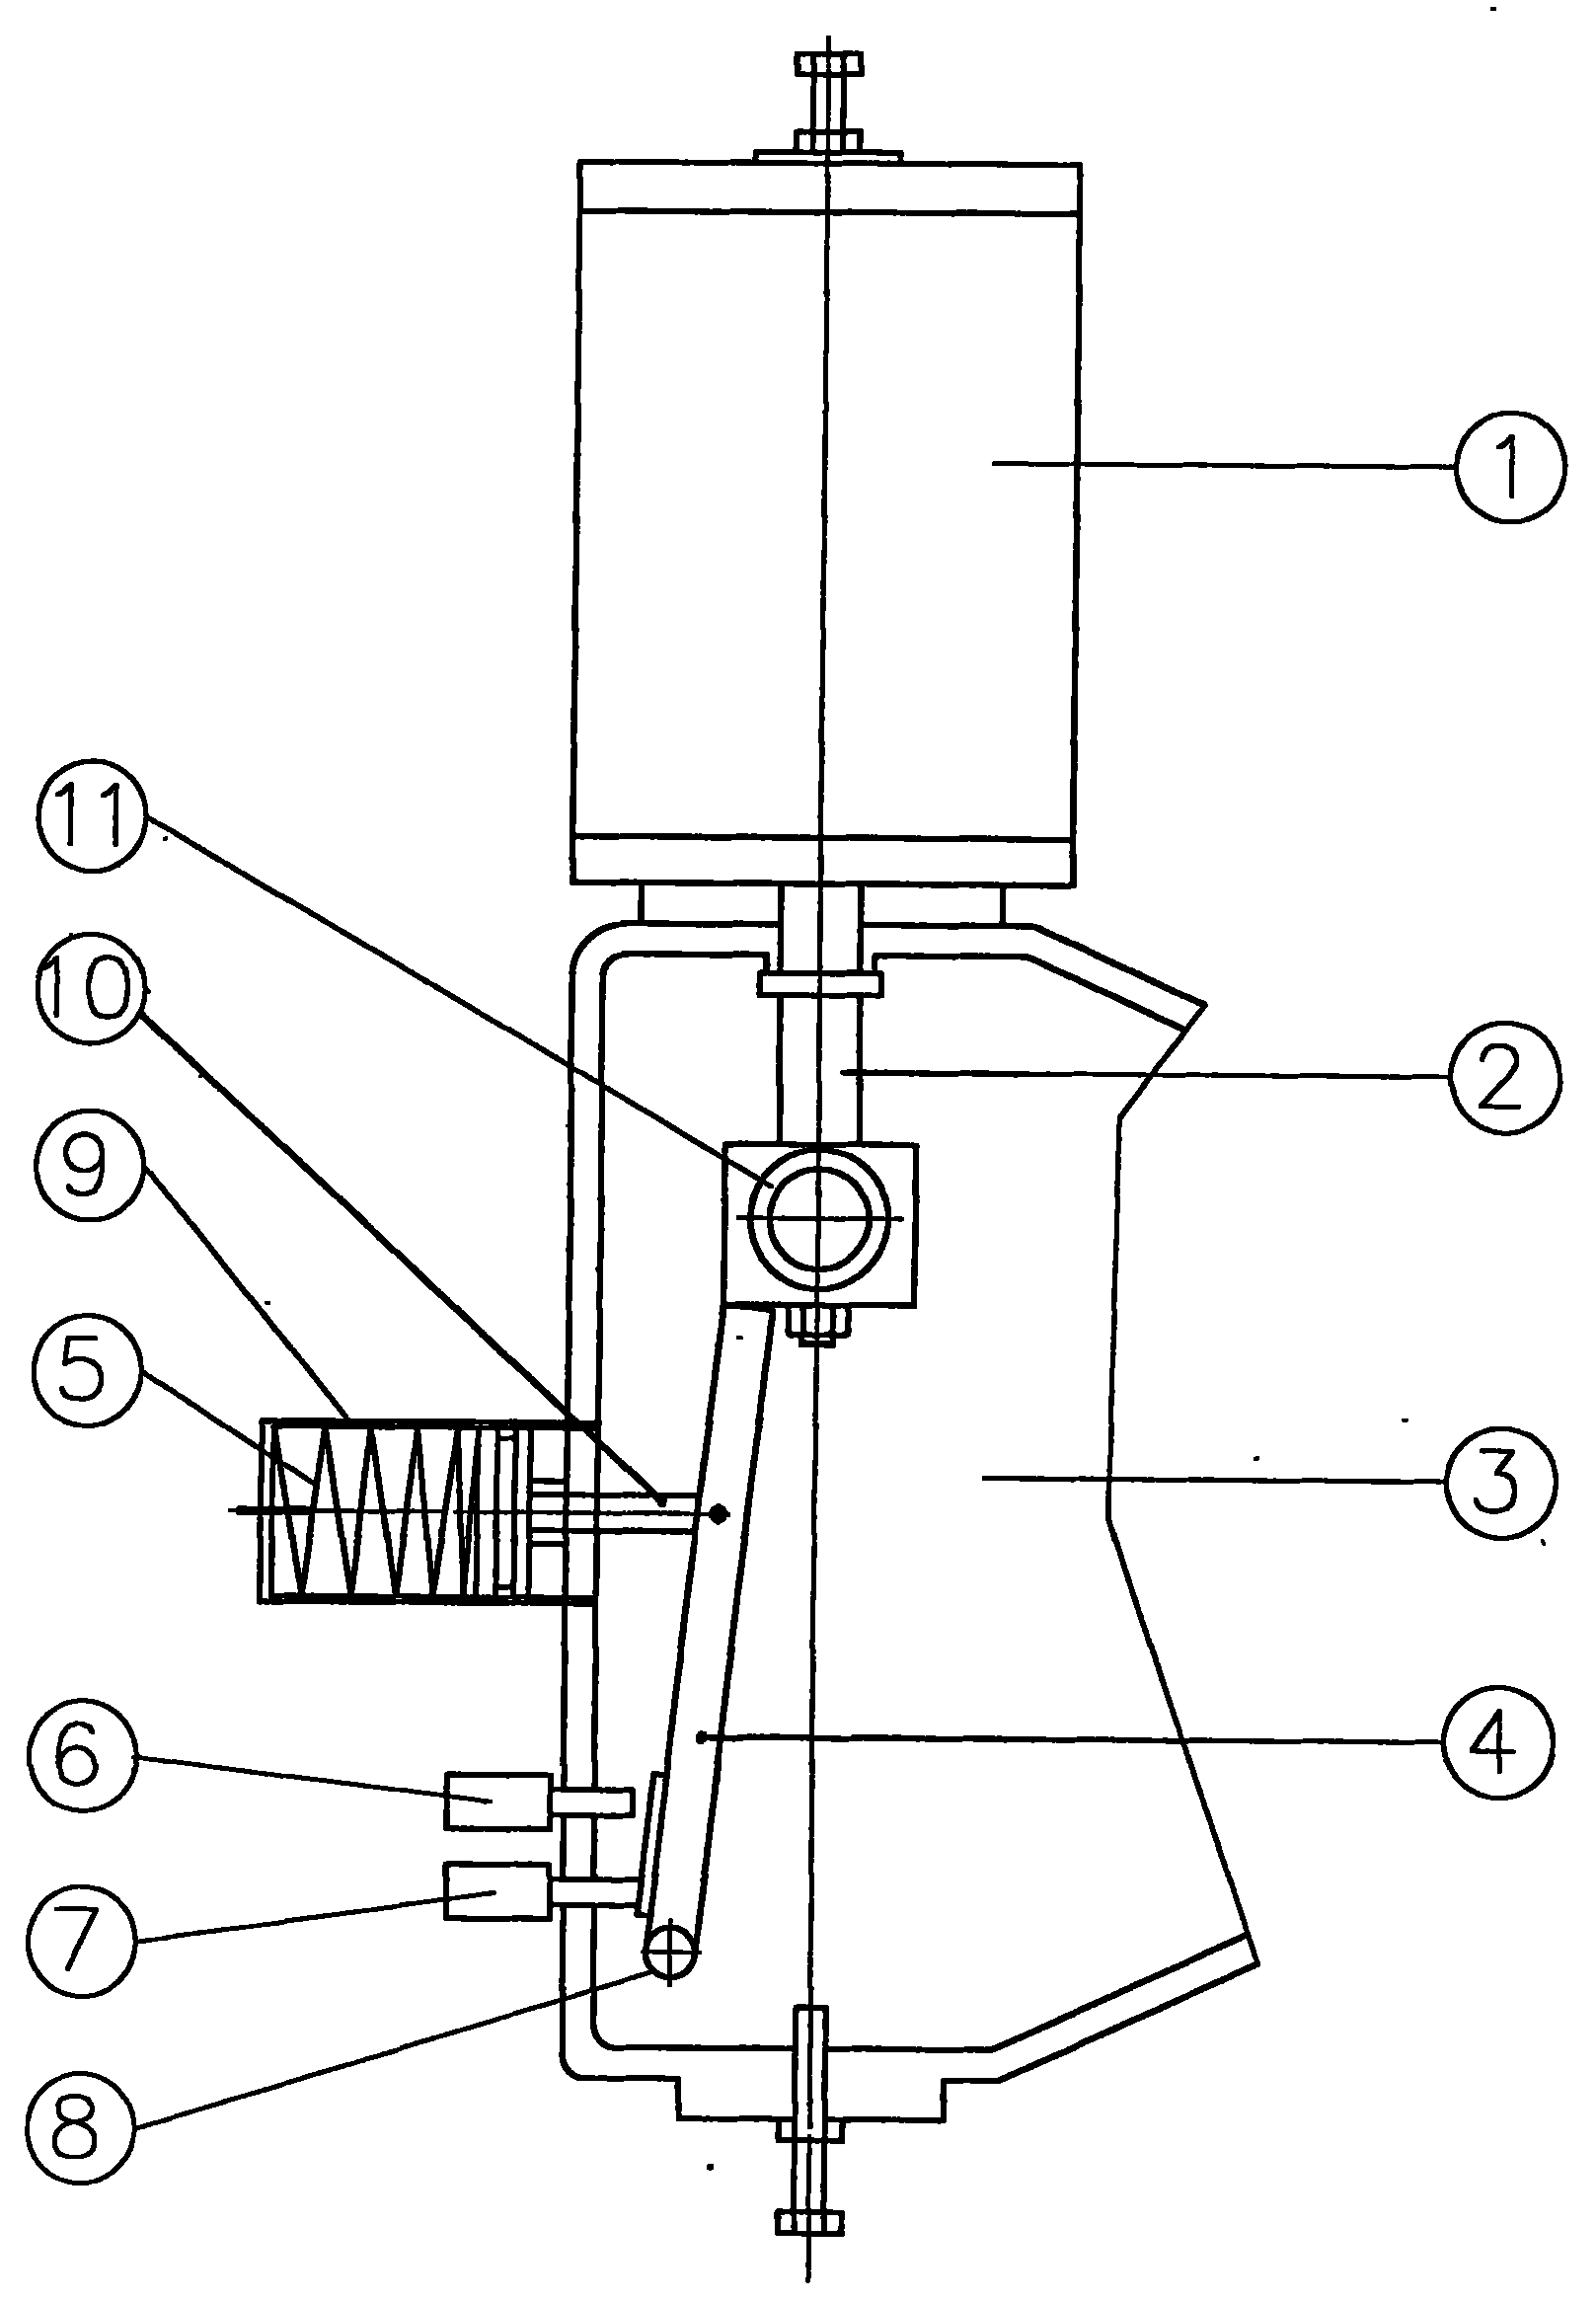 Pneumatic actuator of valve